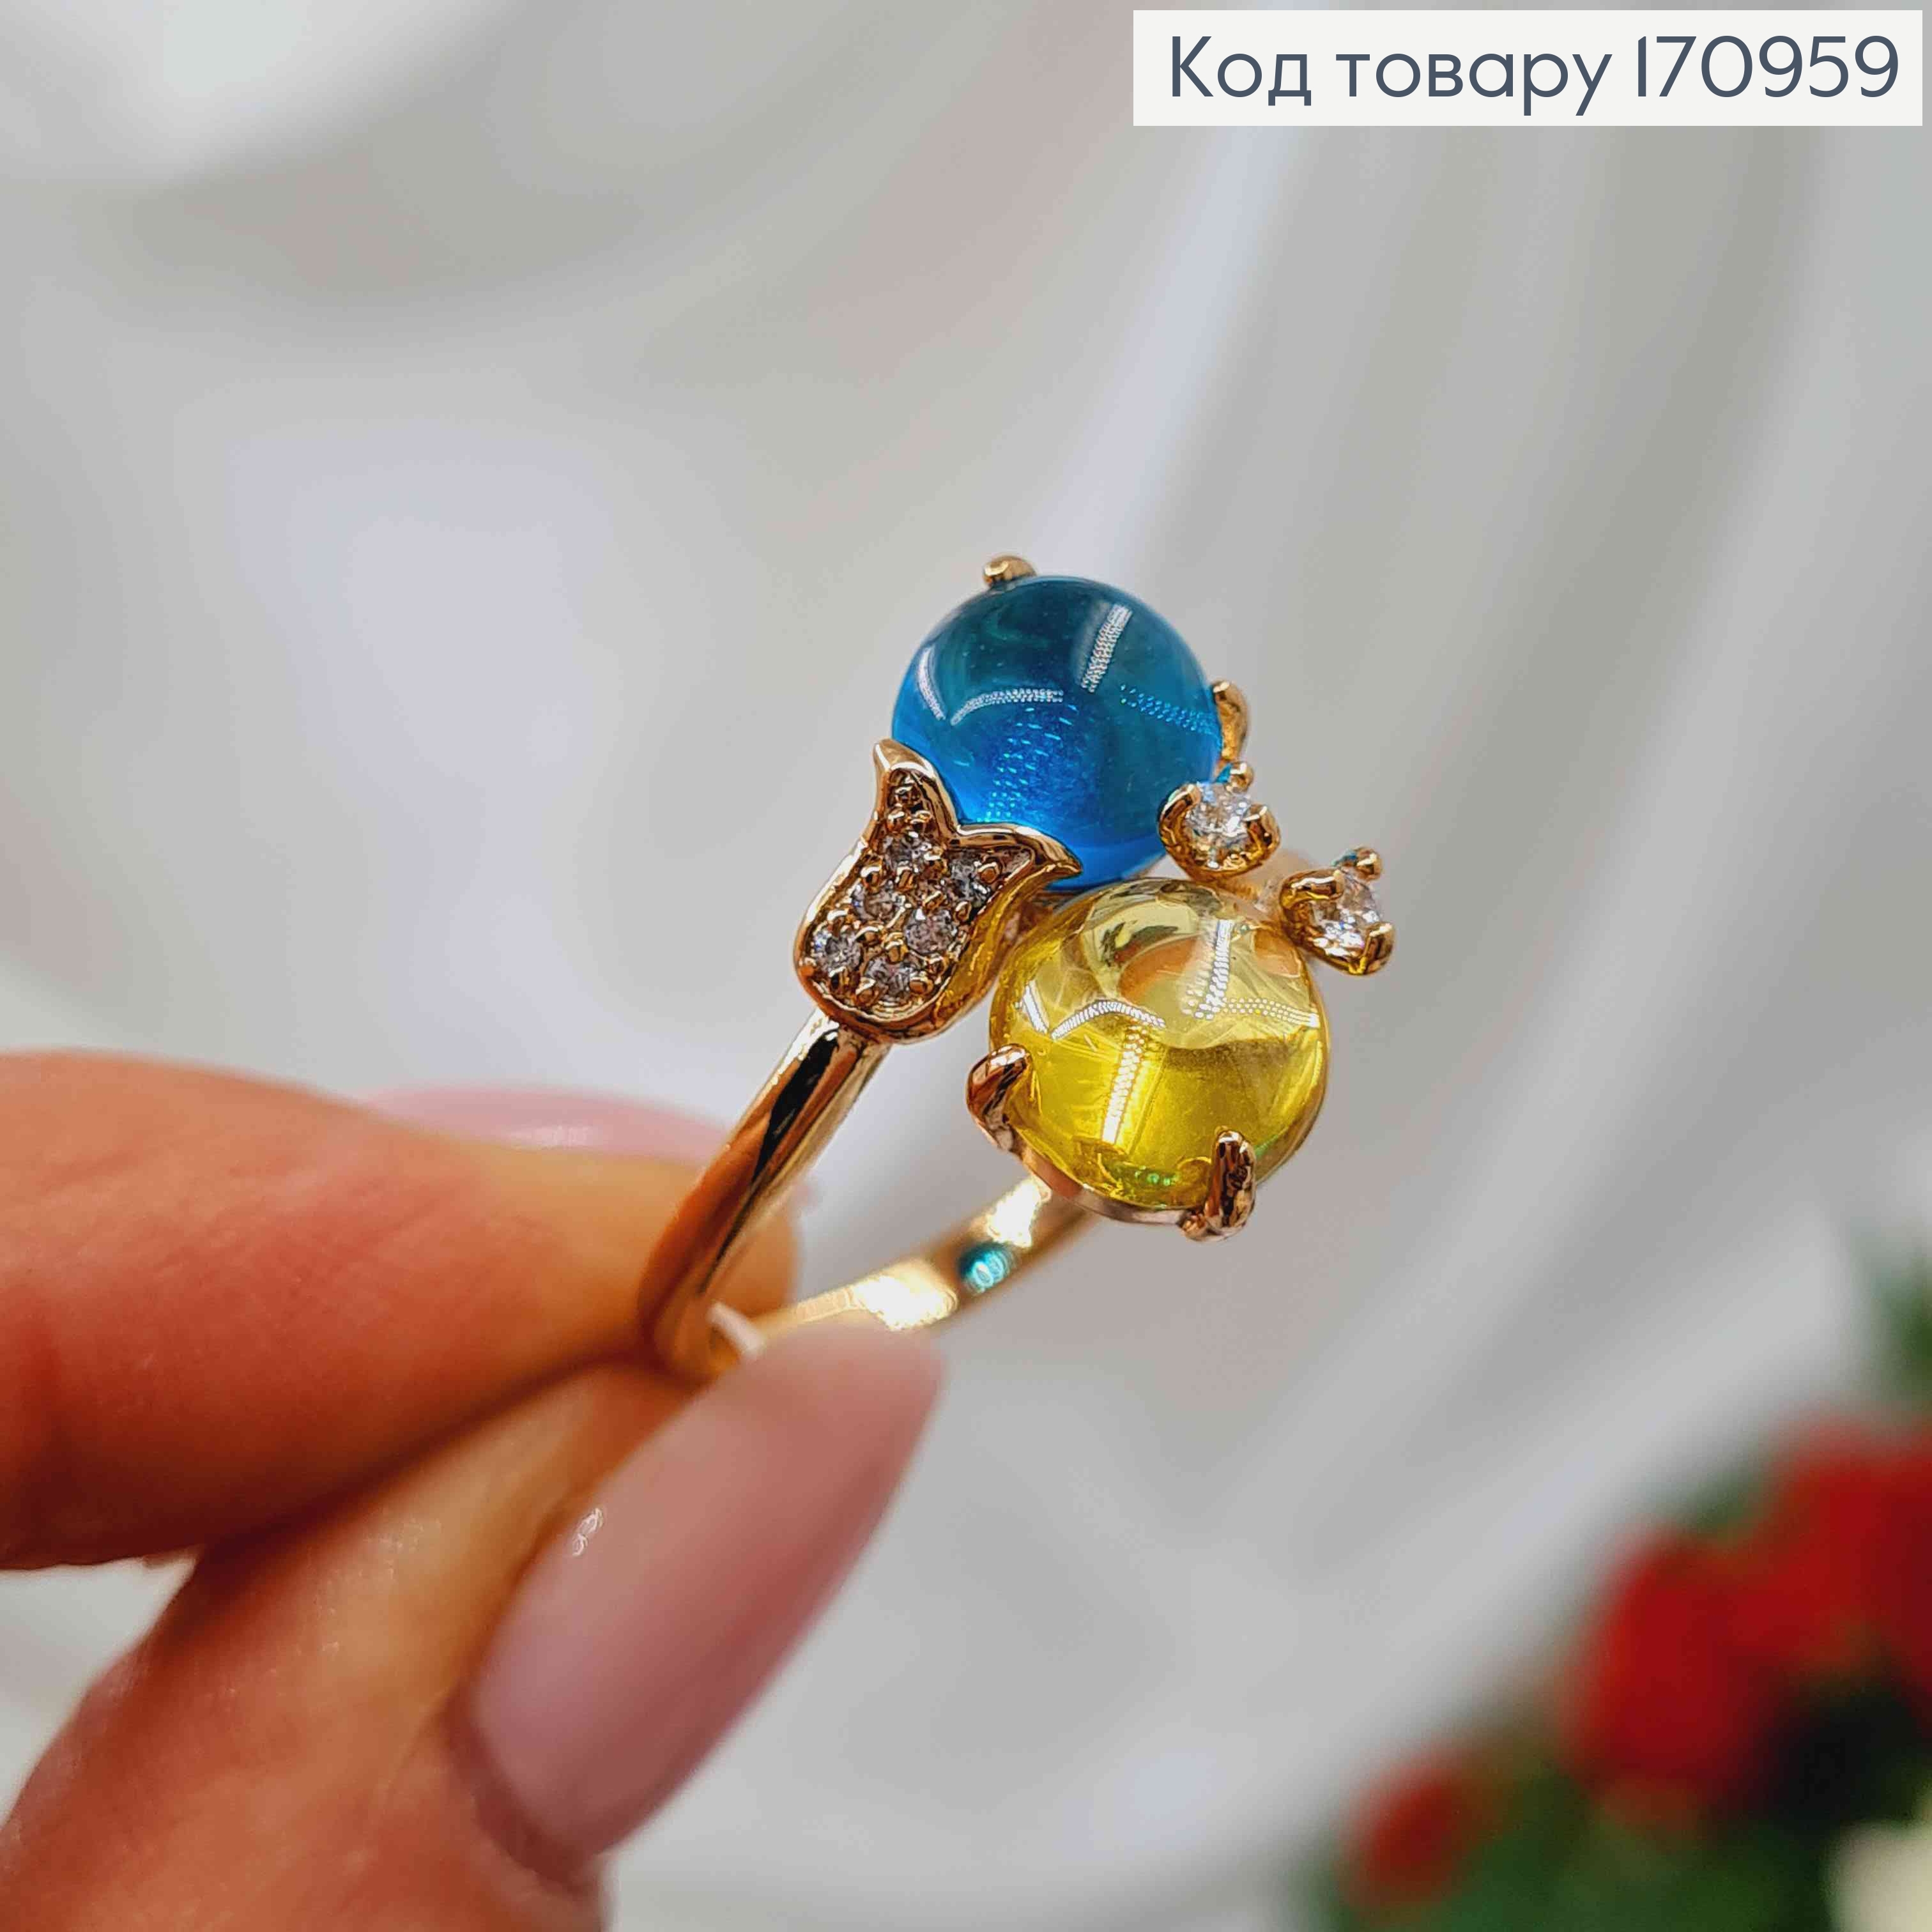 Перстень С сине-желтыми камешками и тюльпанчиком в камешках, Xuping 18К 170959 фото 3